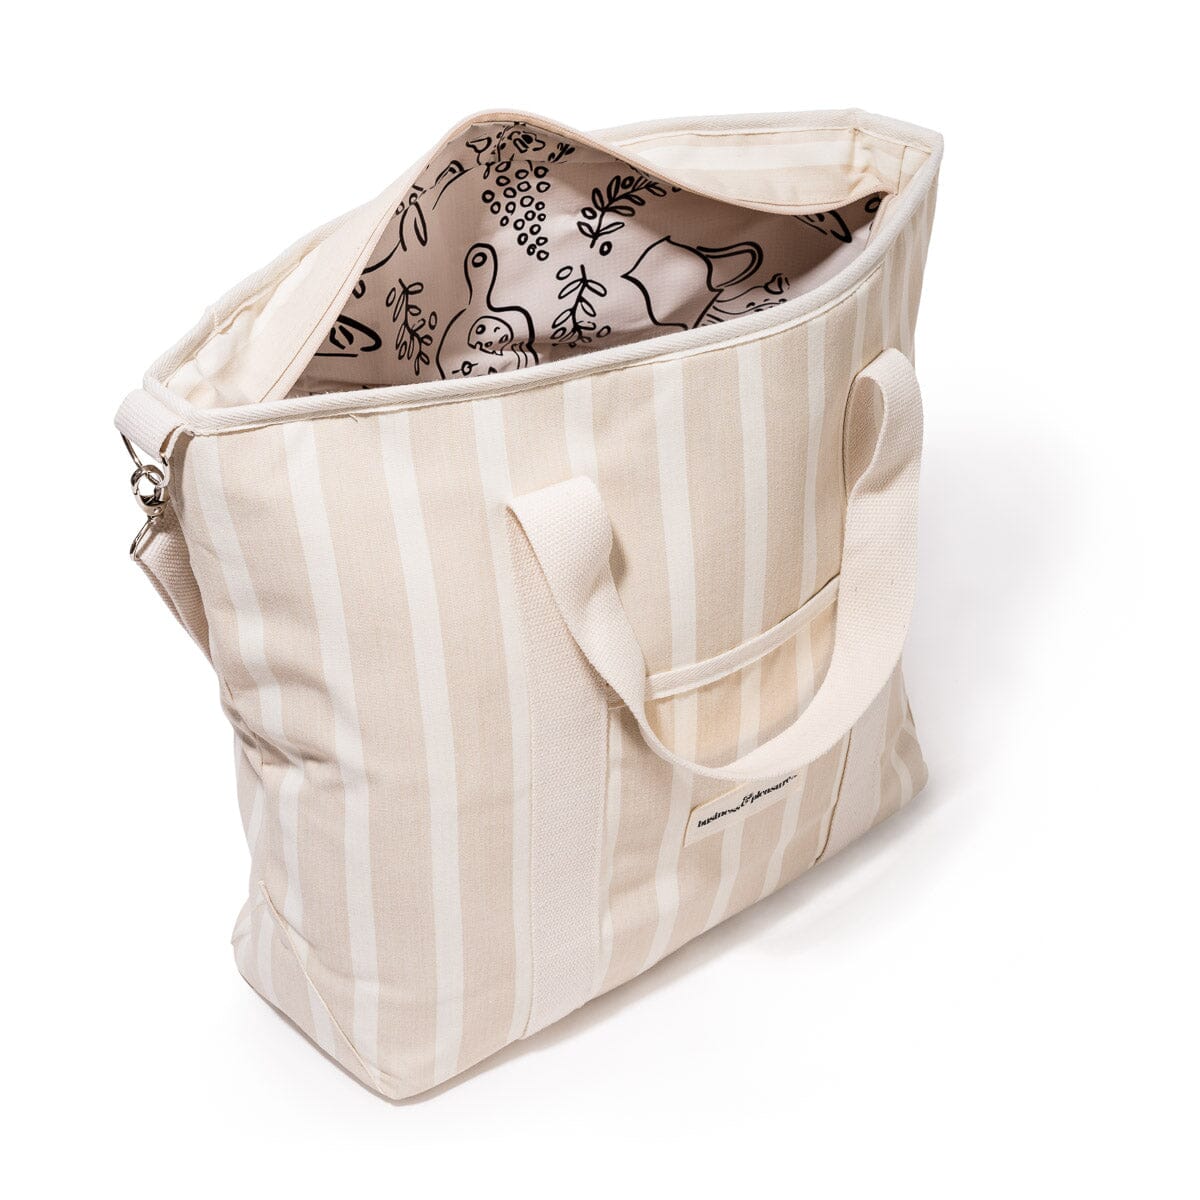 The Cooler Tote Bag - Monaco Natural Stripe Cooler Tote Business & Pleasure Co 